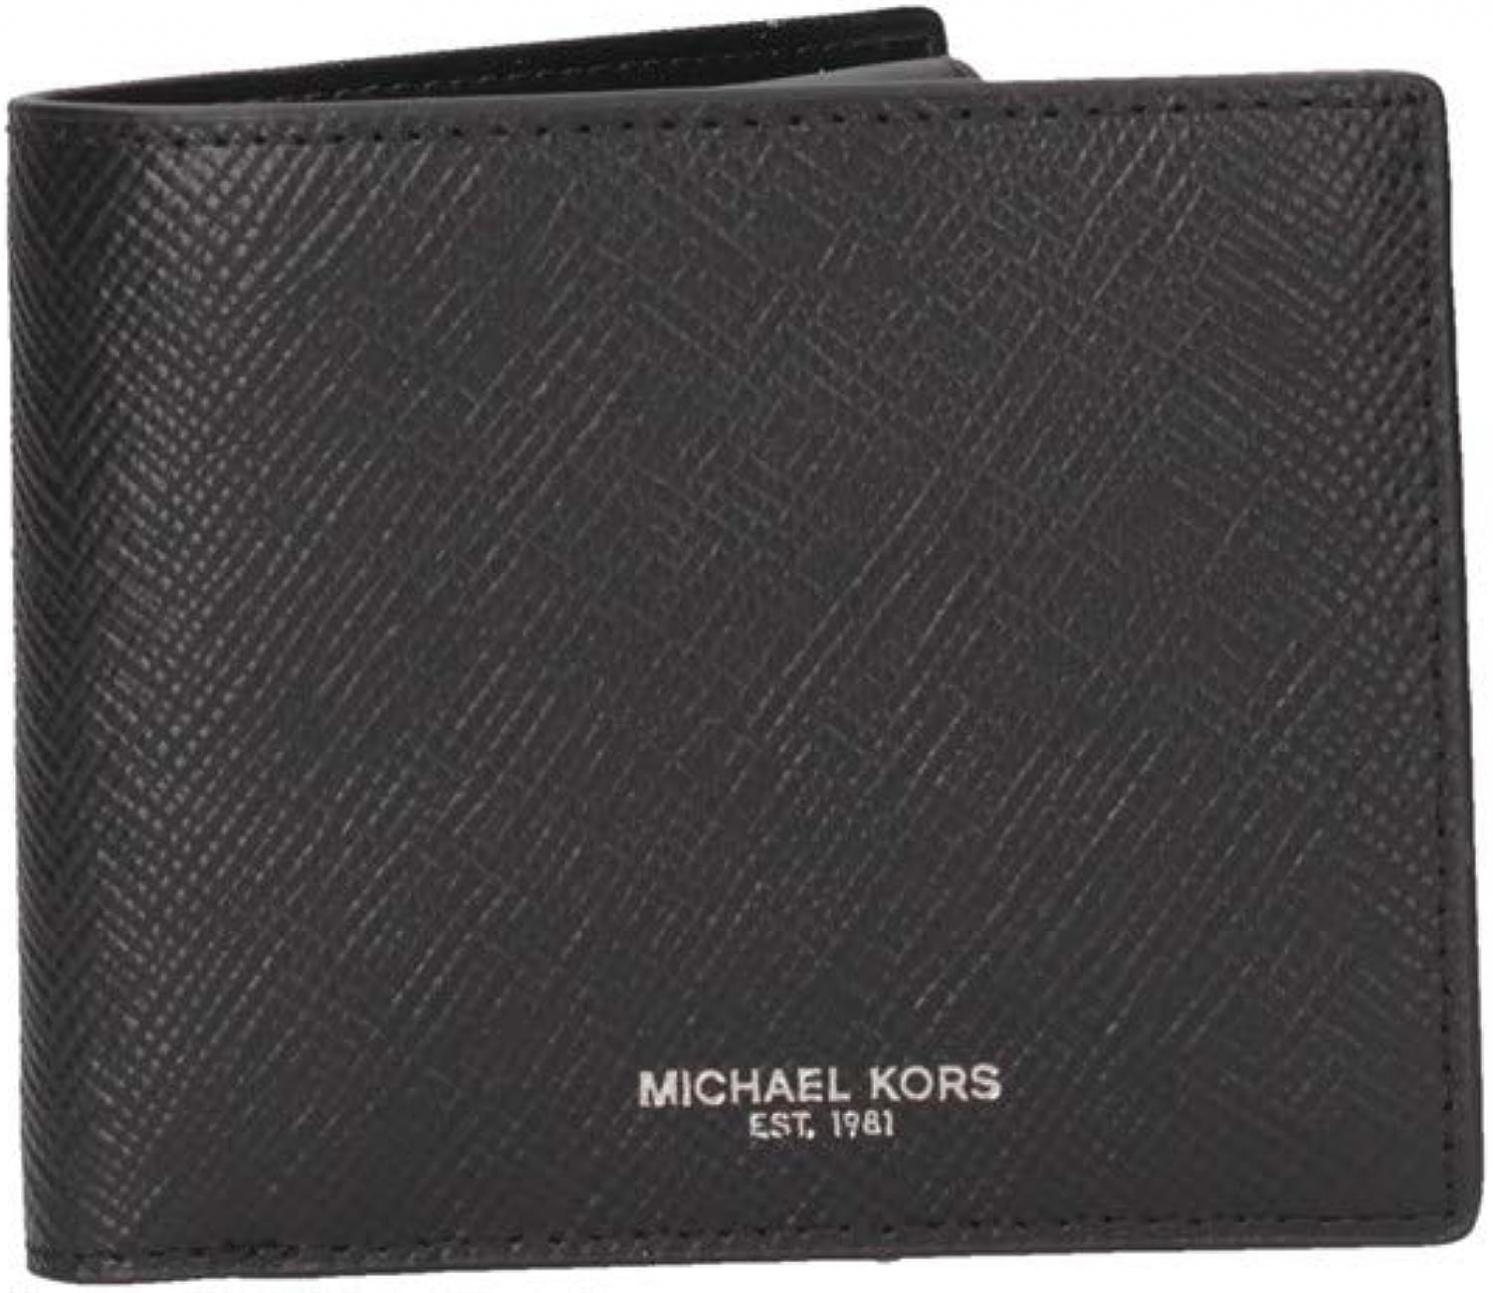 Michael Kors Men's Cooper Billfold with Pocket Wallet